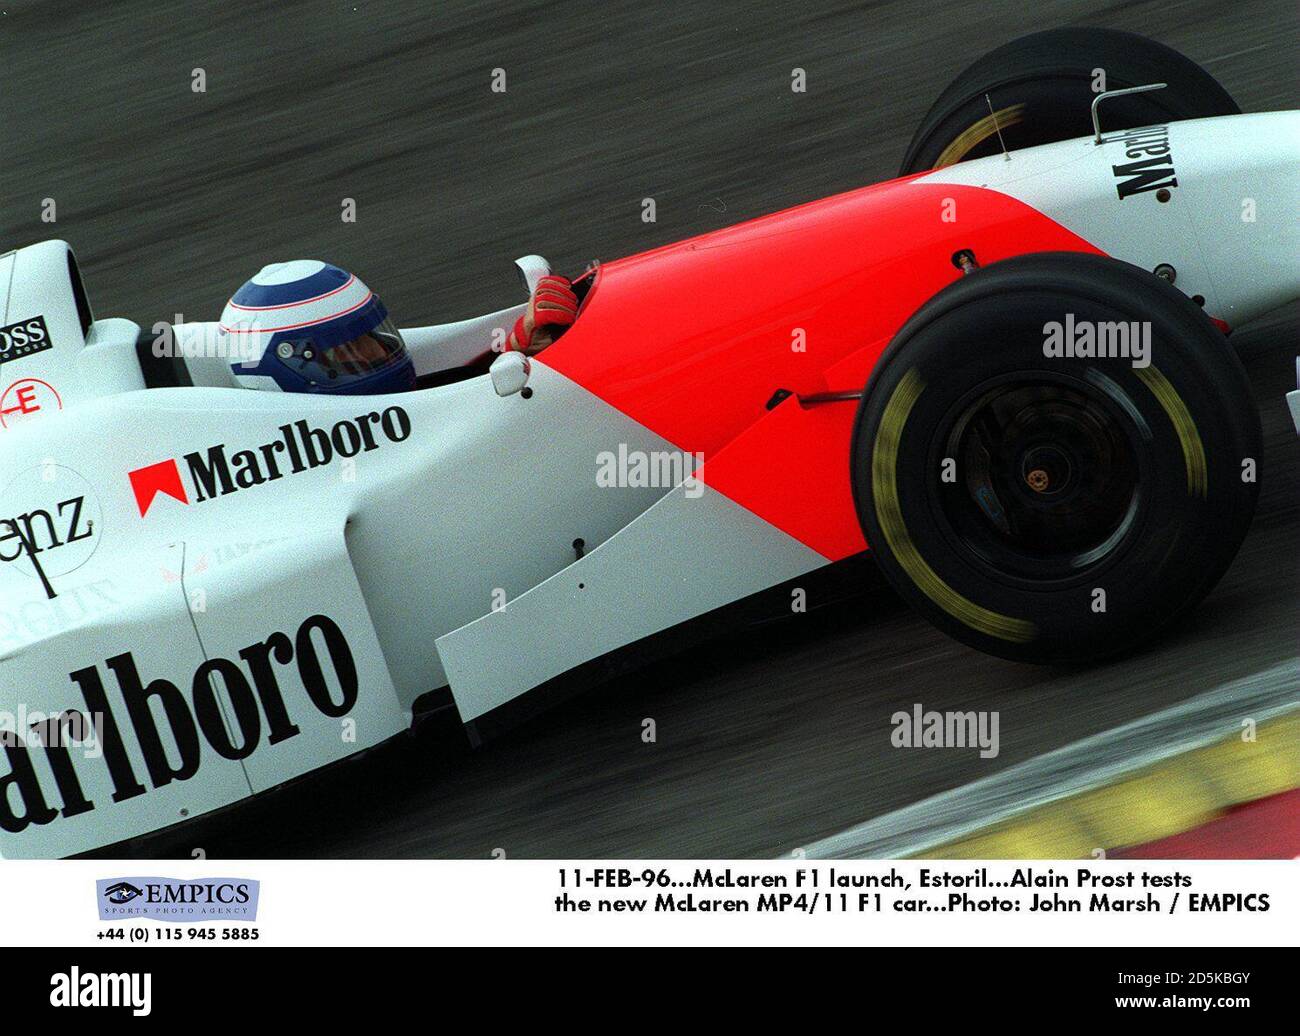 11-FEB-96. Lanzamiento de McLaren F1, Estoril. Alain Prost testsrel nuevo McLaren  MP4/11 F1 coche Fotografía de stock - Alamy